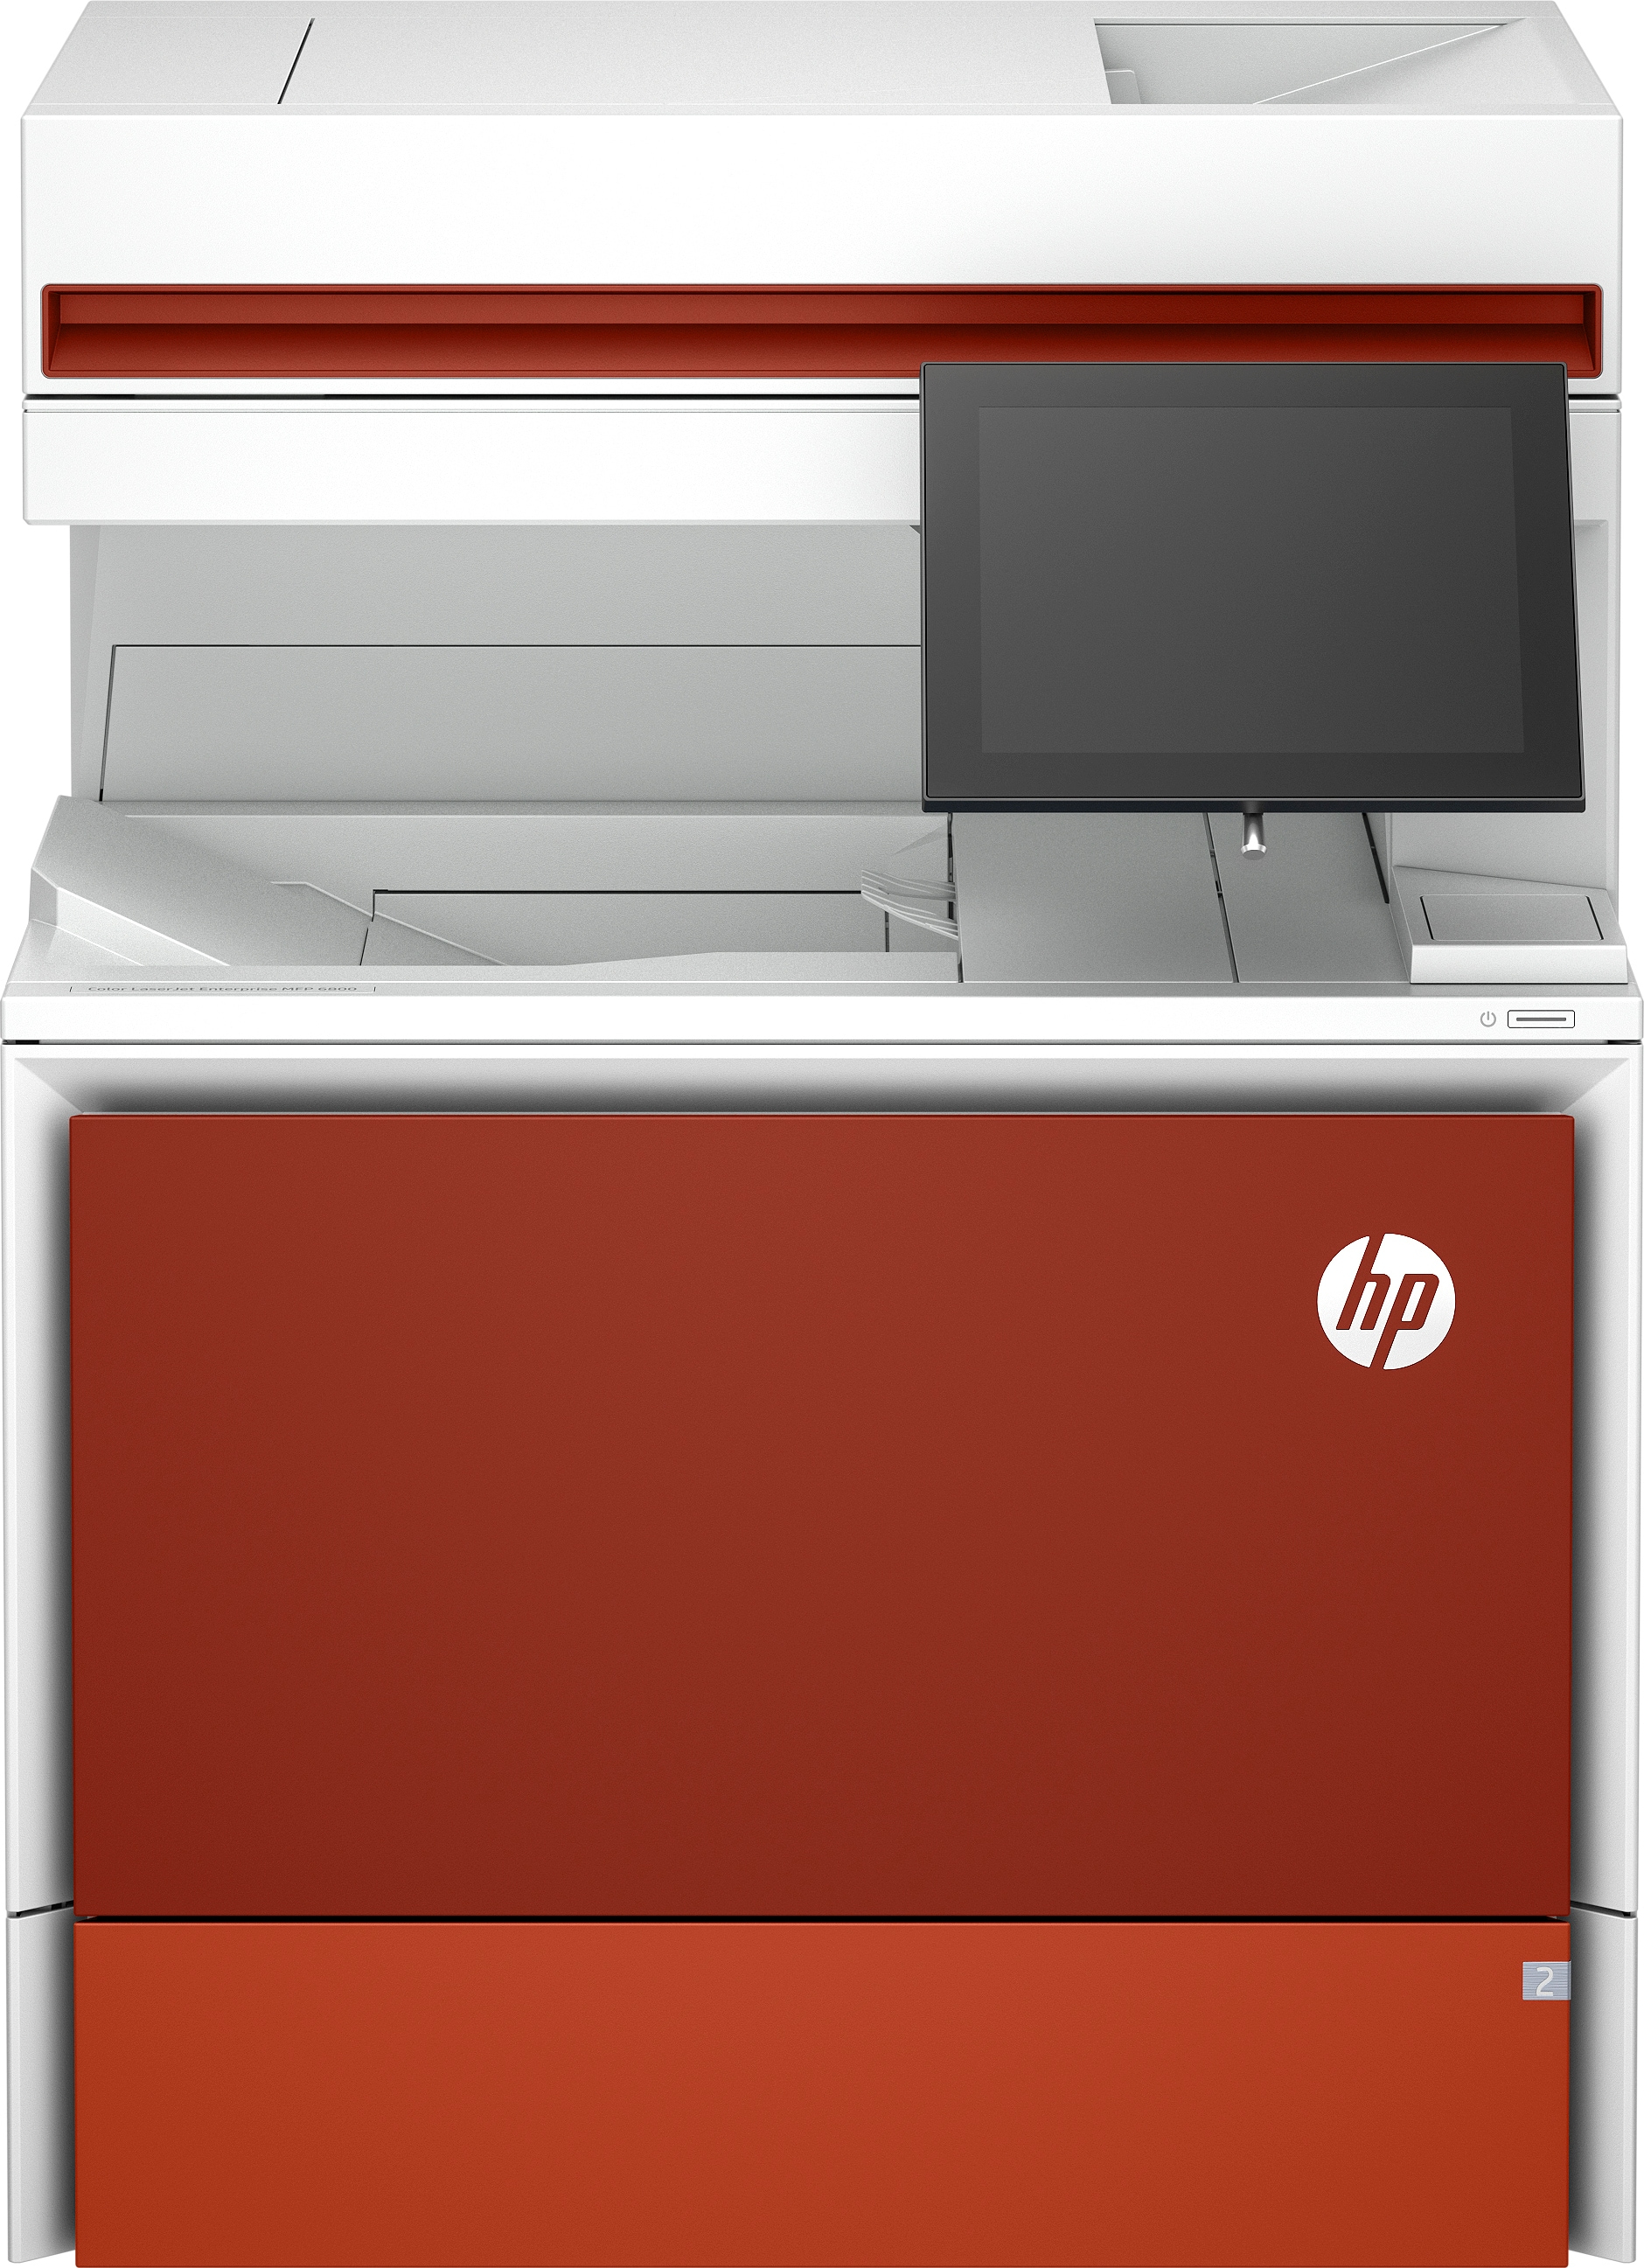 HP Color LaserJet Enterprise Imprimante multifonction 6800dn, Impression, copie, numérisation, télécopie (en option), Chargeur automatique de documents. Bacs haute capacité en option. Écran tactile. Cartouche TerraJet